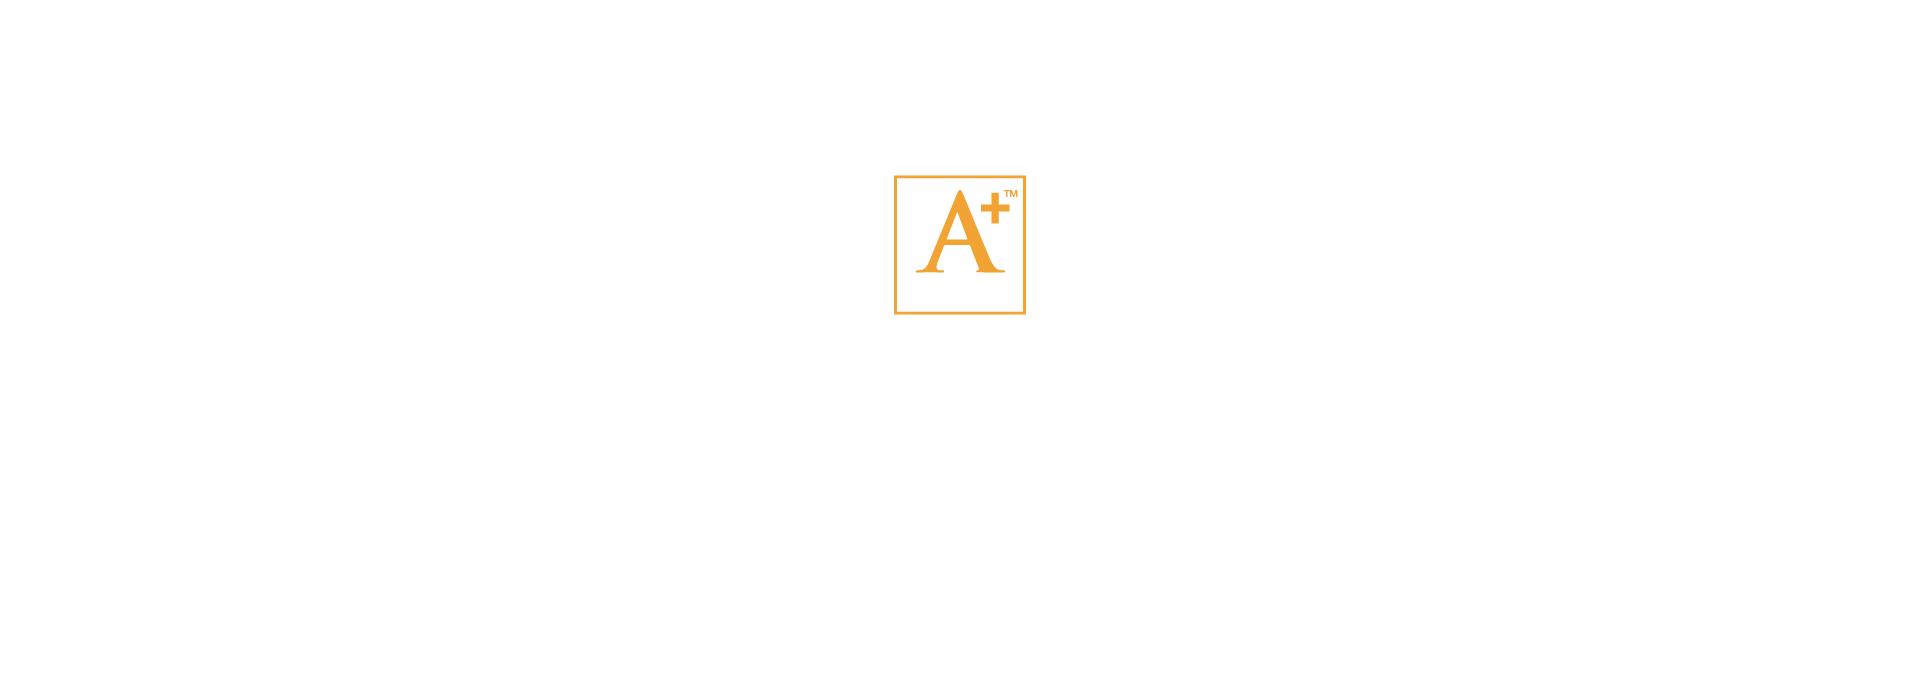 2018 Awards